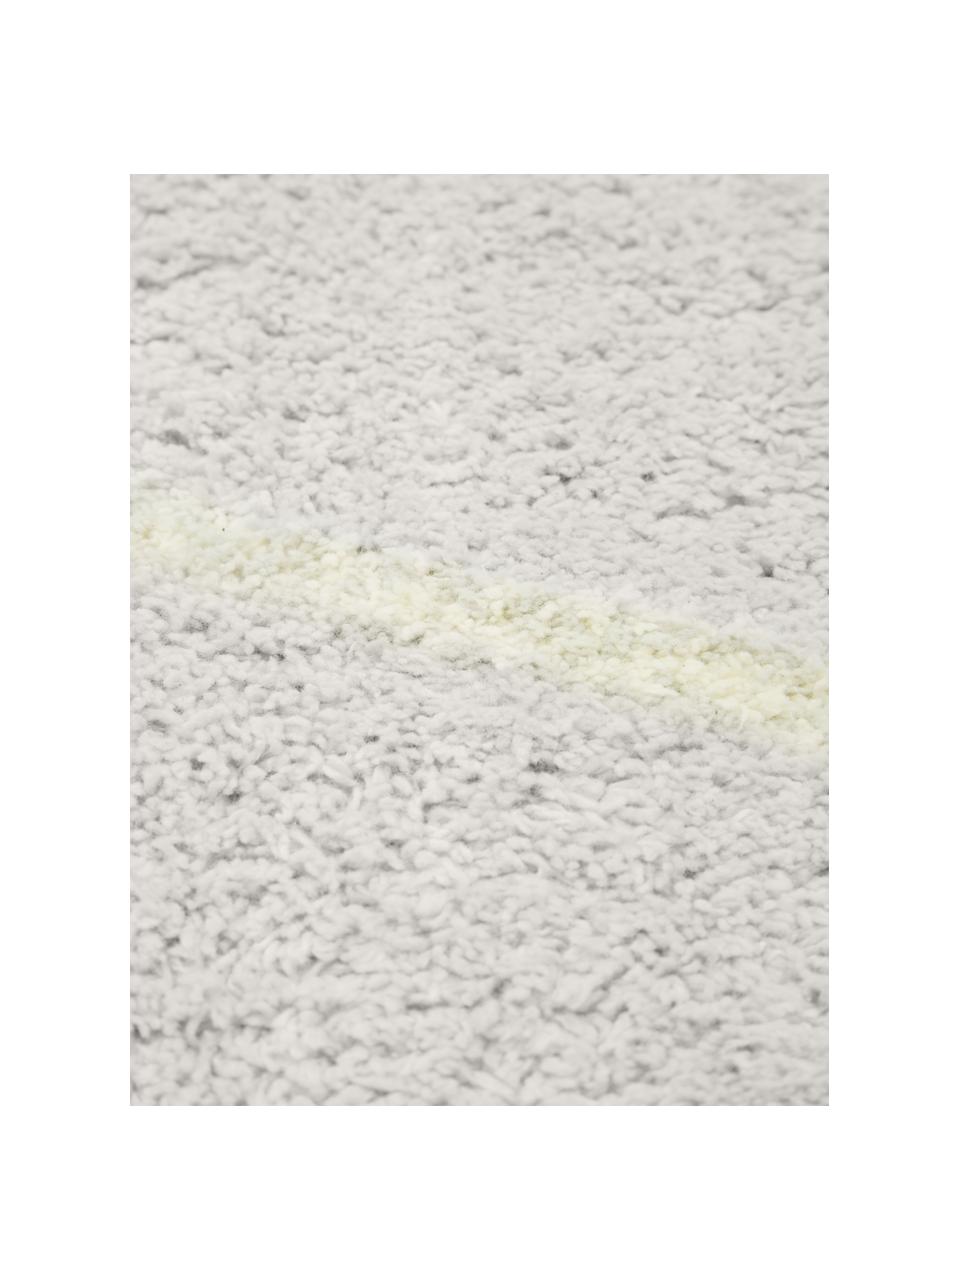 Ručně tkaný bavlněný koberec s klikatým vzorem a třásněmi Asisa, Odstíny šedé a žluté, Š 80 cm, D 150 cm (velikost XS)